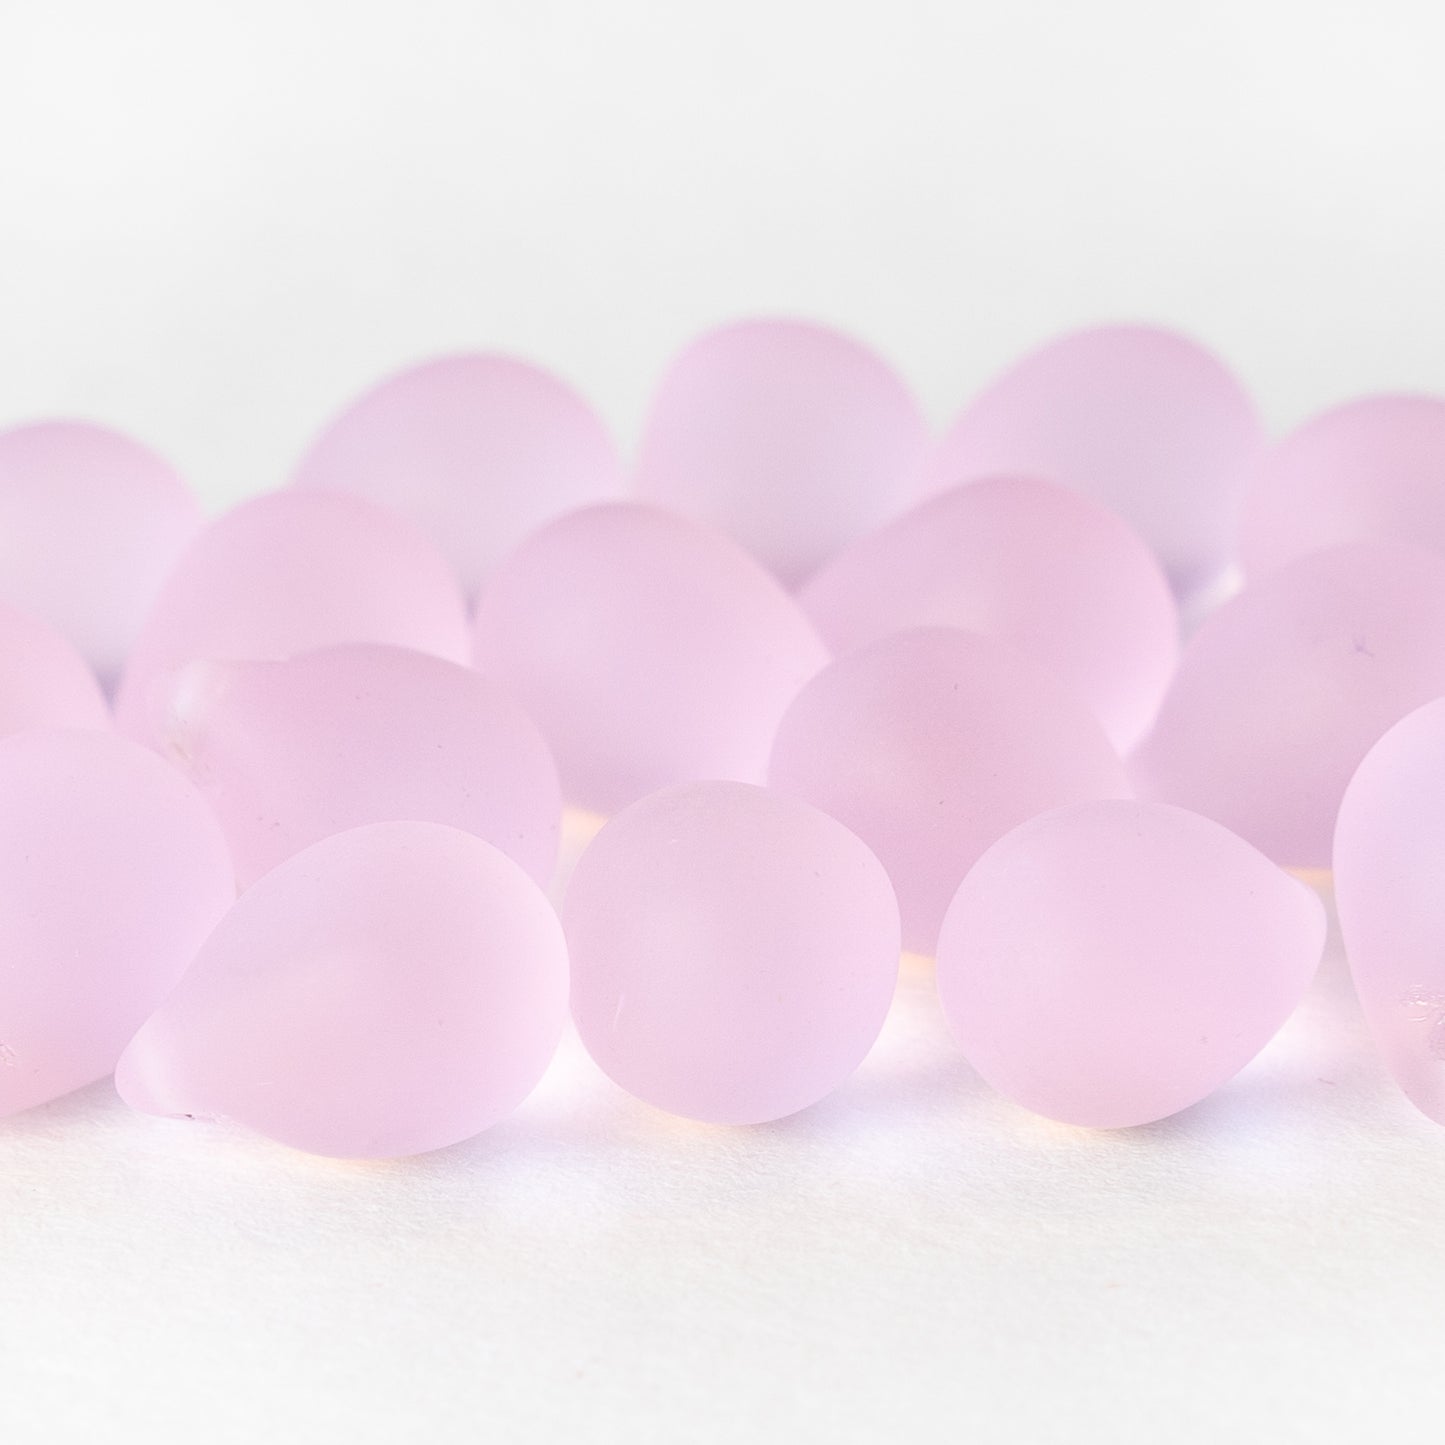 10x14mm Glass Teardrop Beads - Pink Matte